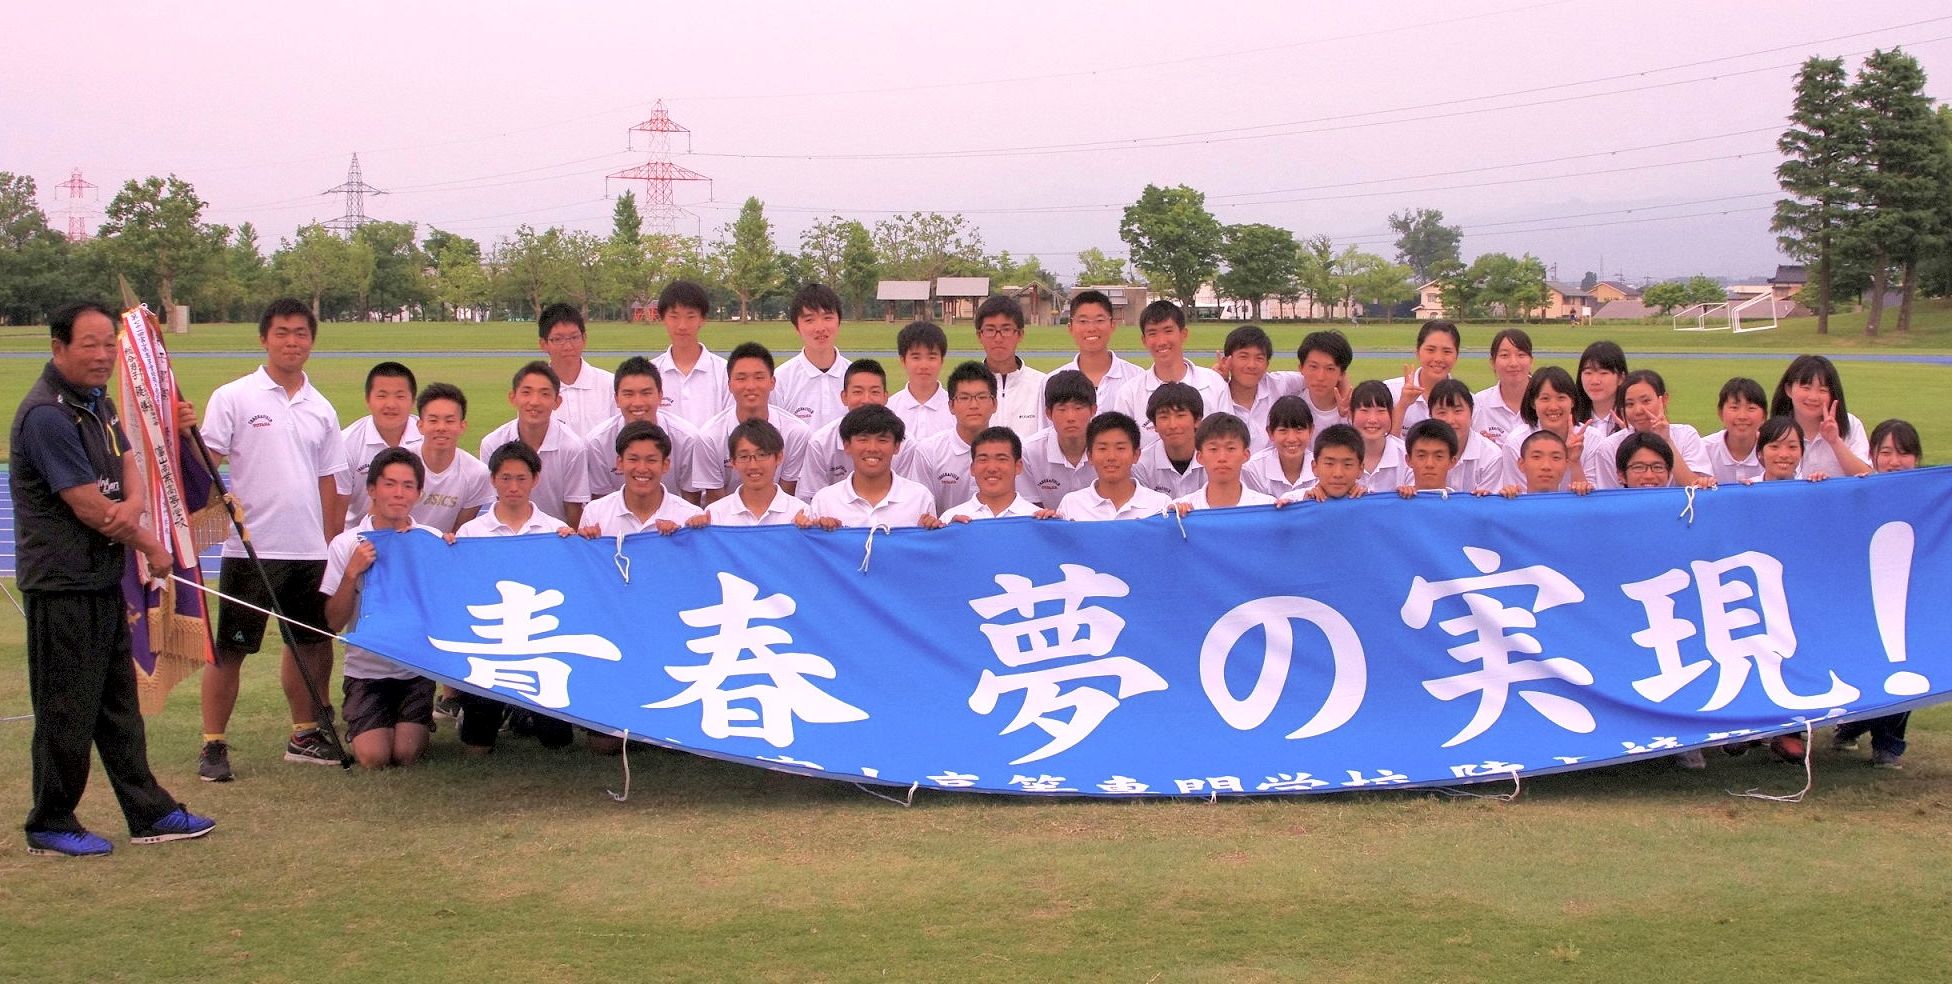 平成３０年度富山県高等学校総合体育大会陸上競技において優秀な成績をおさめました。